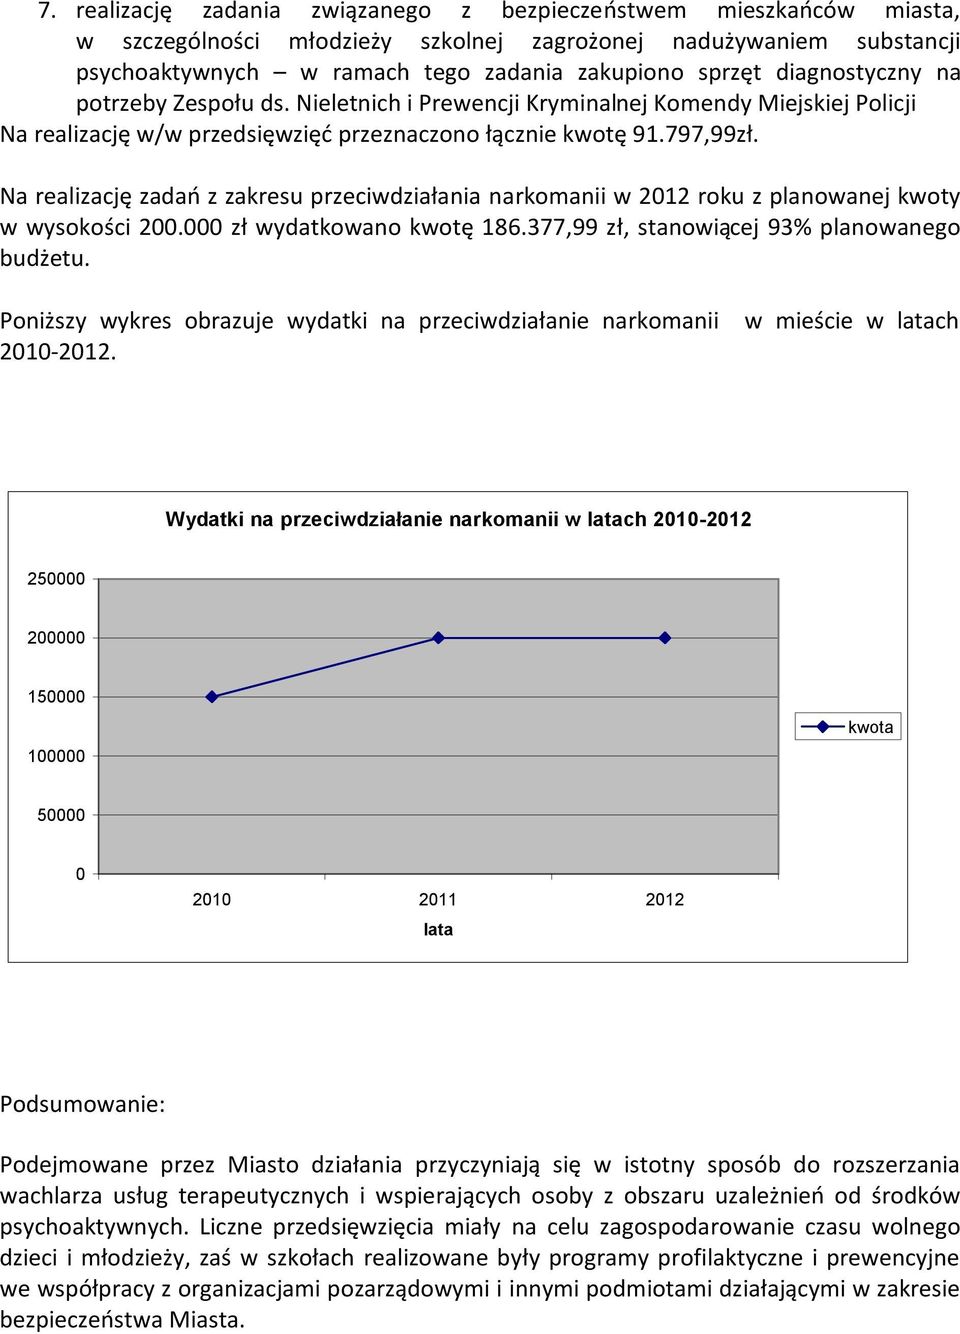 Na realizację zadań z zakresu przeciwdziałania narkomanii w 2012 roku z planowanej kwoty w wysokości 200.000 zł wydatkowano kwotę 186.377,99 zł, stanowiącej 93% planowanego budżetu.